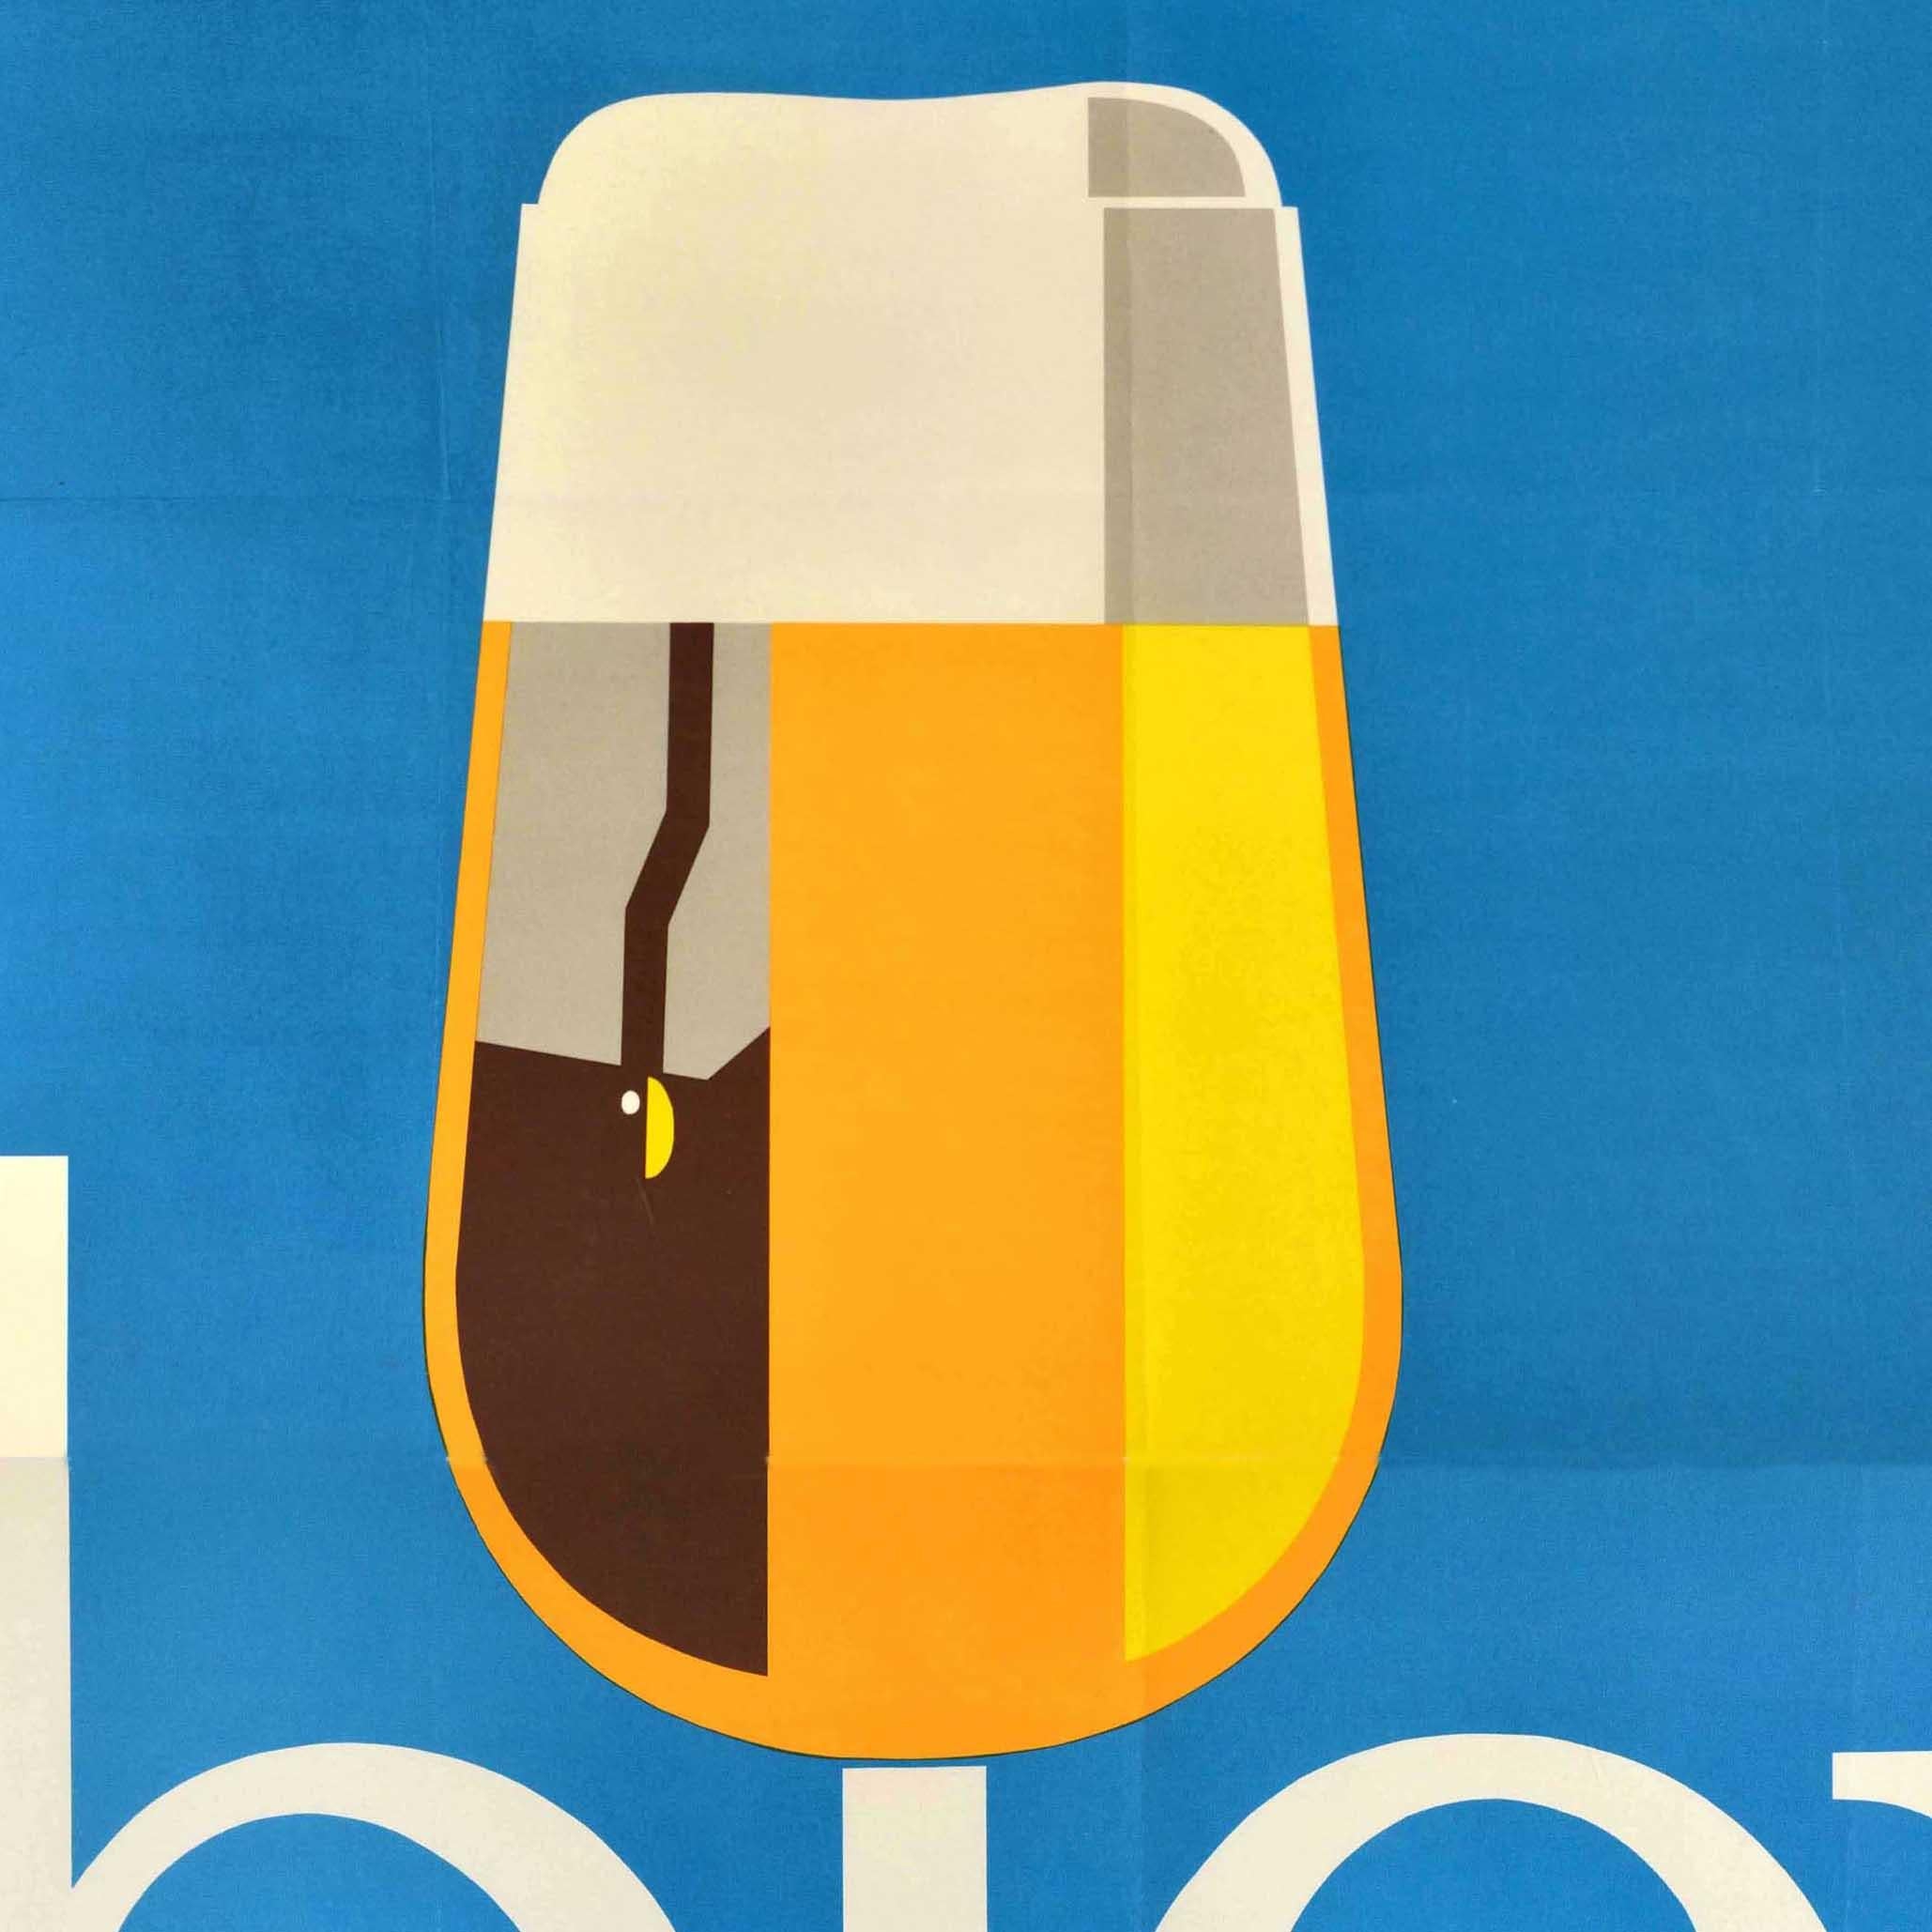 Affiche publicitaire vintage originale - Mass halten bier trinken / Drink beer moderately - représentant un verre de bière sur un fond bleu. Grande taille. Bon état, plis, froissement, tampon à l'encre au verso, affiche en 2 feuilles.